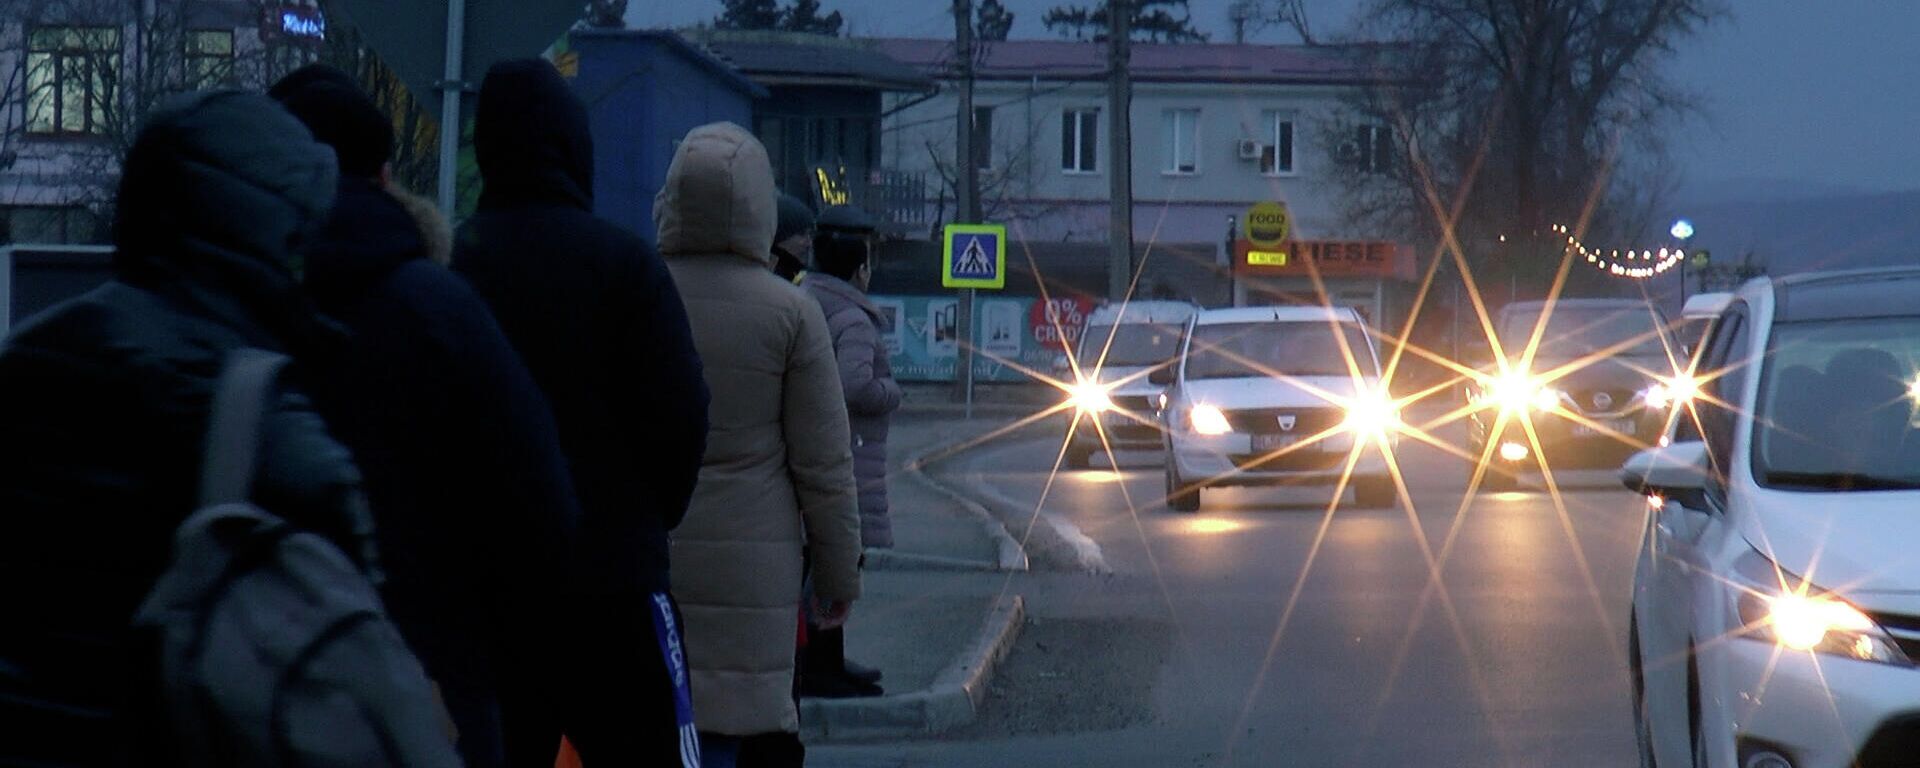 Люди в Молдове ловят попутки пока транспортники бастуют и обещают населению неудобства - Sputnik Молдова, 1920, 07.02.2022